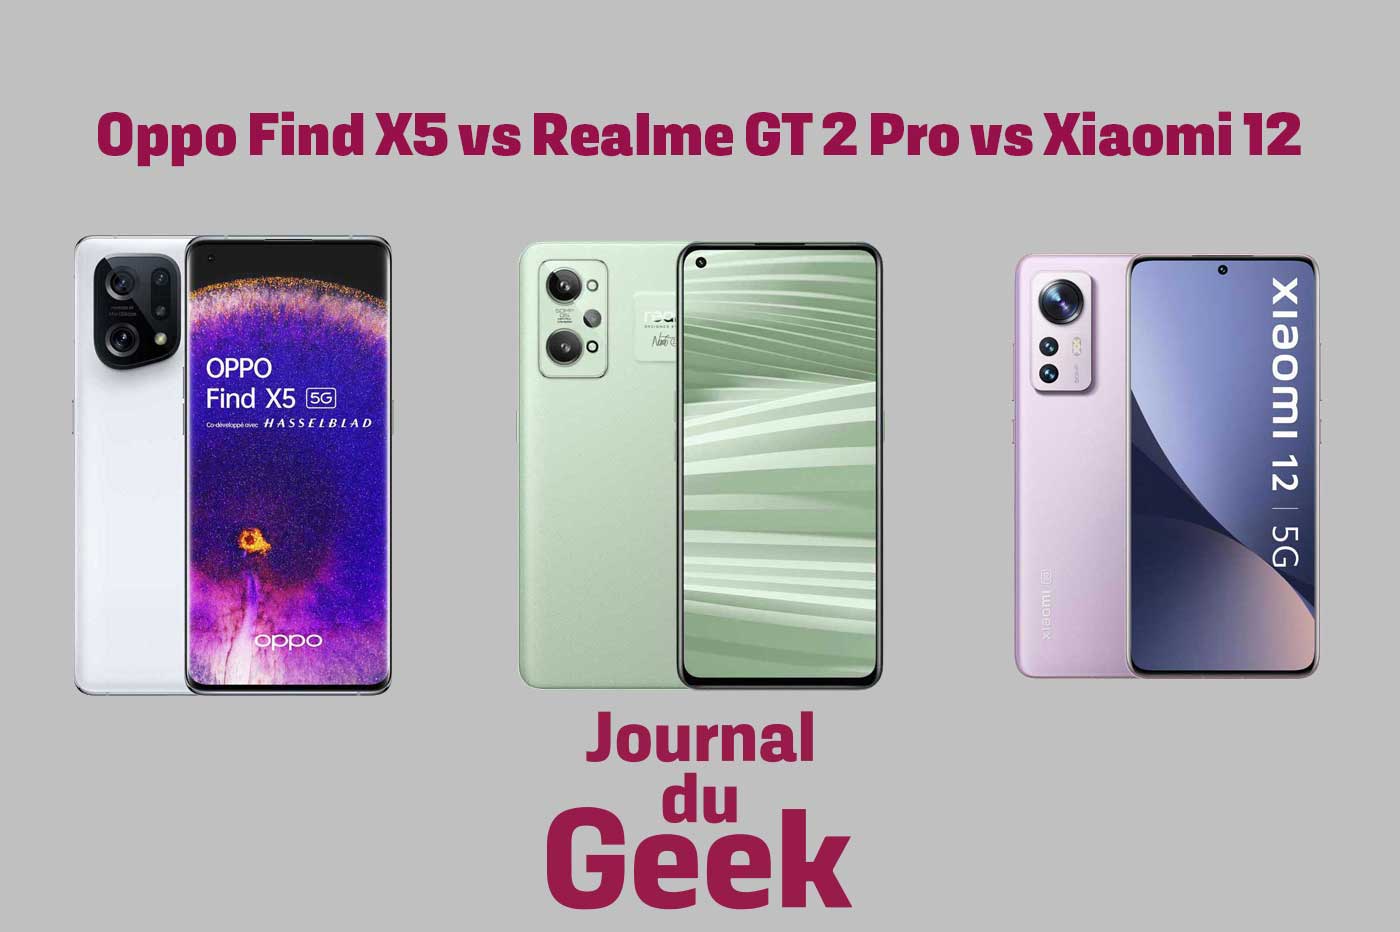 Oppo Find X5 vs Realme GT 2 Pro vs Xiaomi 12